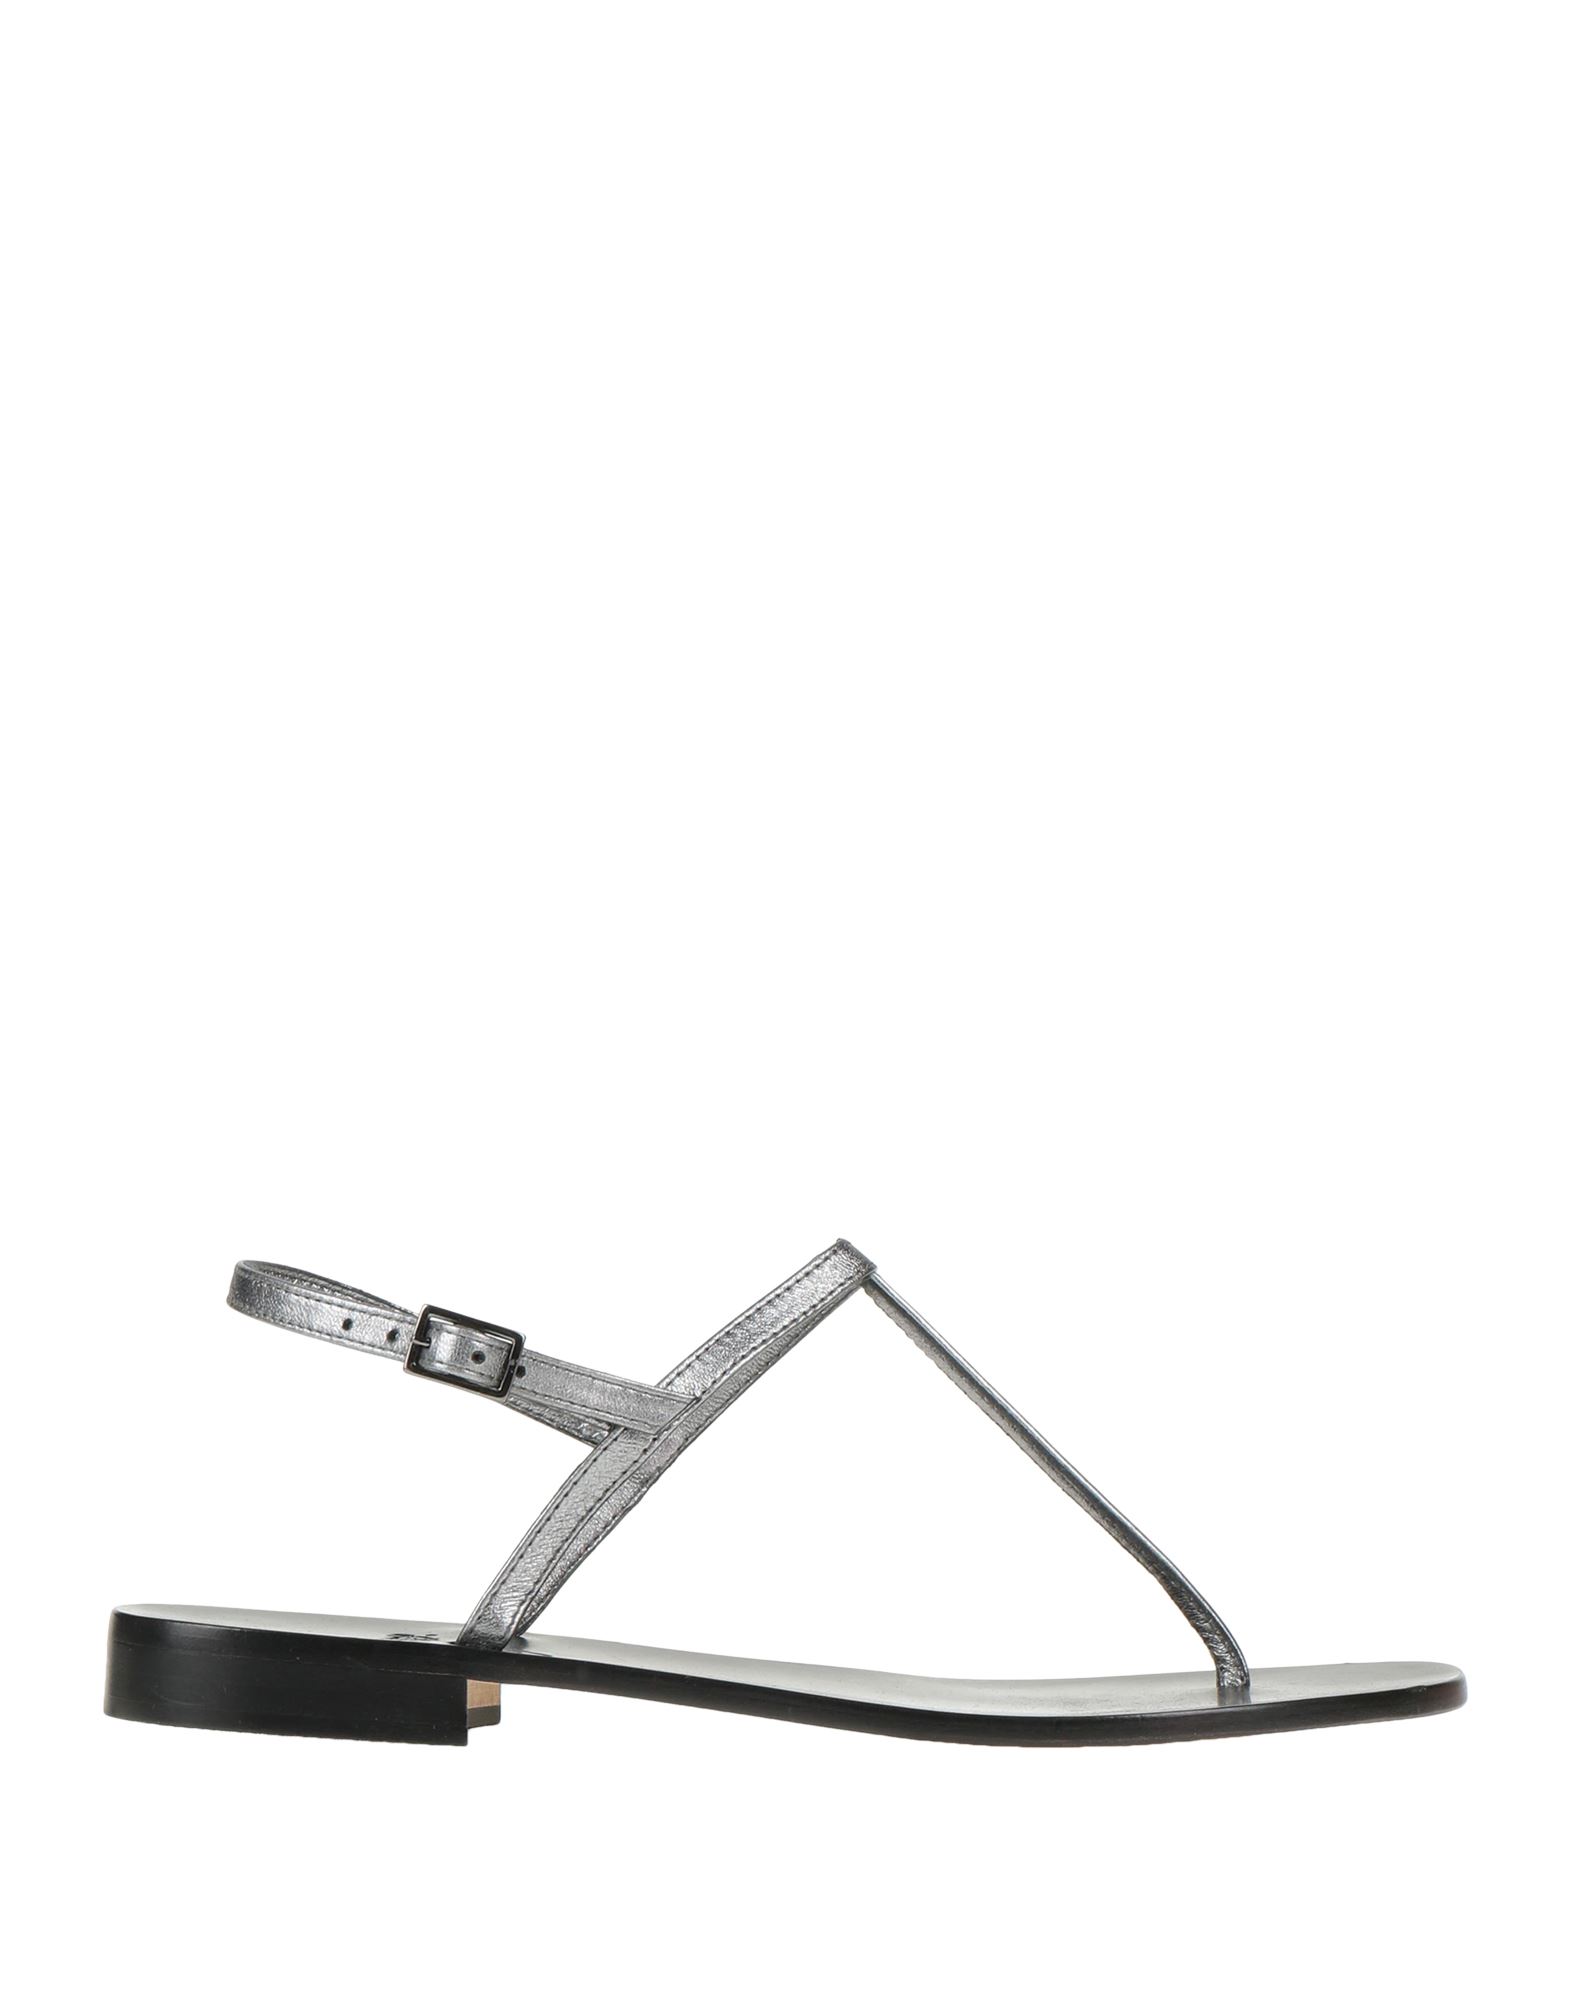 Paolo Ferrara Toe Strap Sandals In Silver